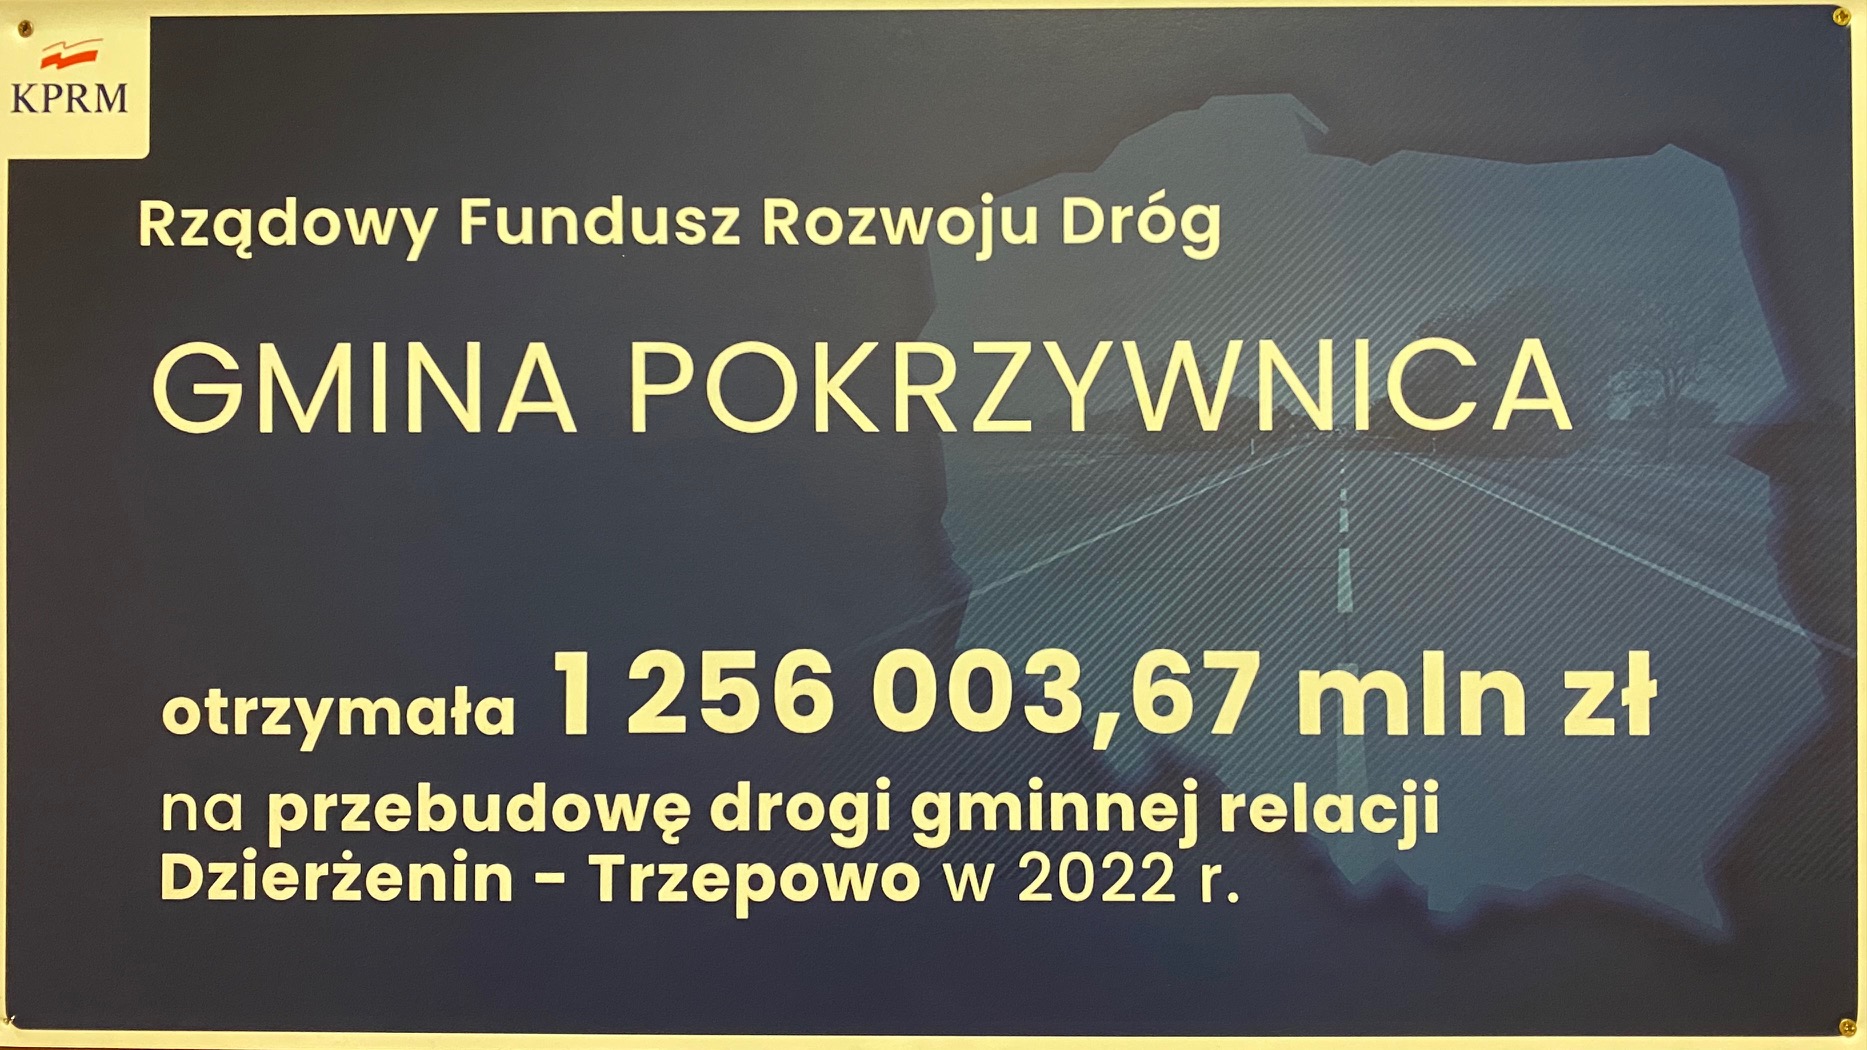 Gmina Pokrzywnica otrzymała 1 256 003,67 zł z Rządowego Funduszu Rozwoju Dróg na przebudowę drogi gminnej relacji Dzierżenin – Trzepowo